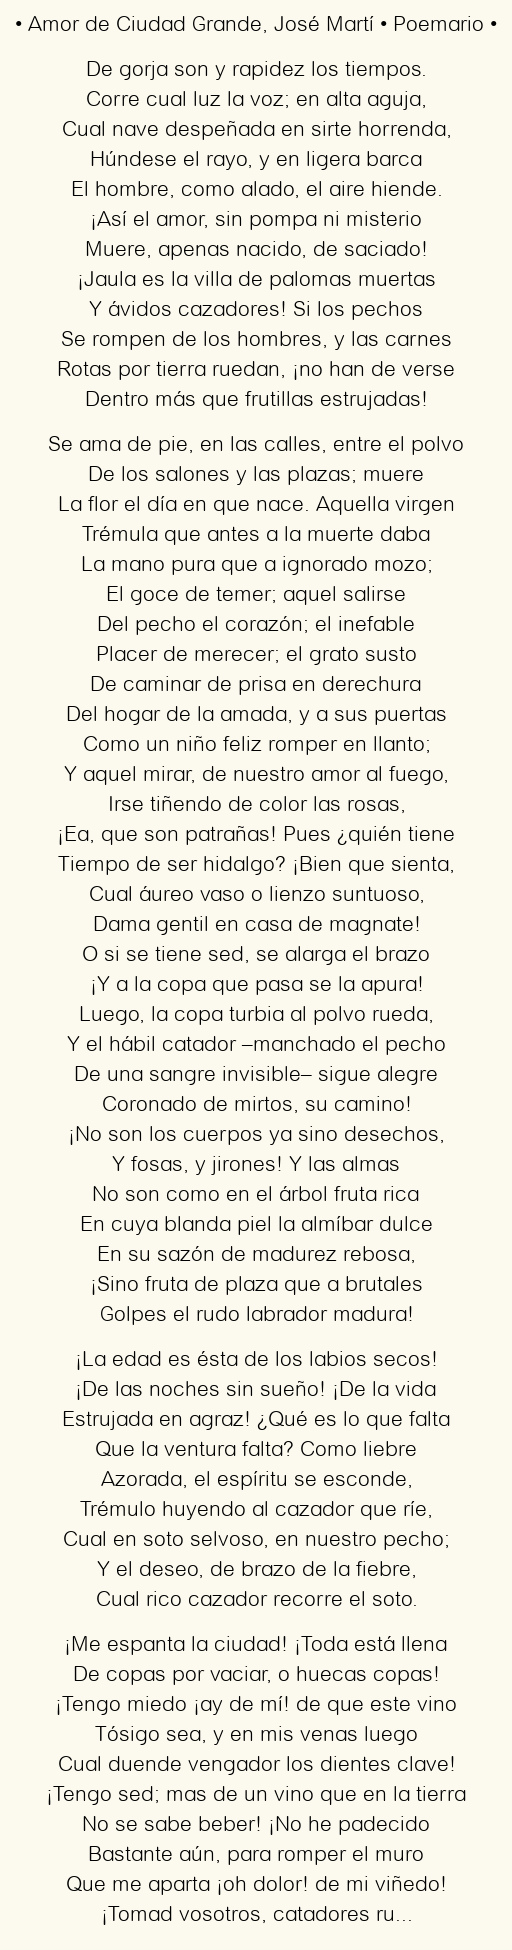 Amor de Ciudad Grande, por José Martí